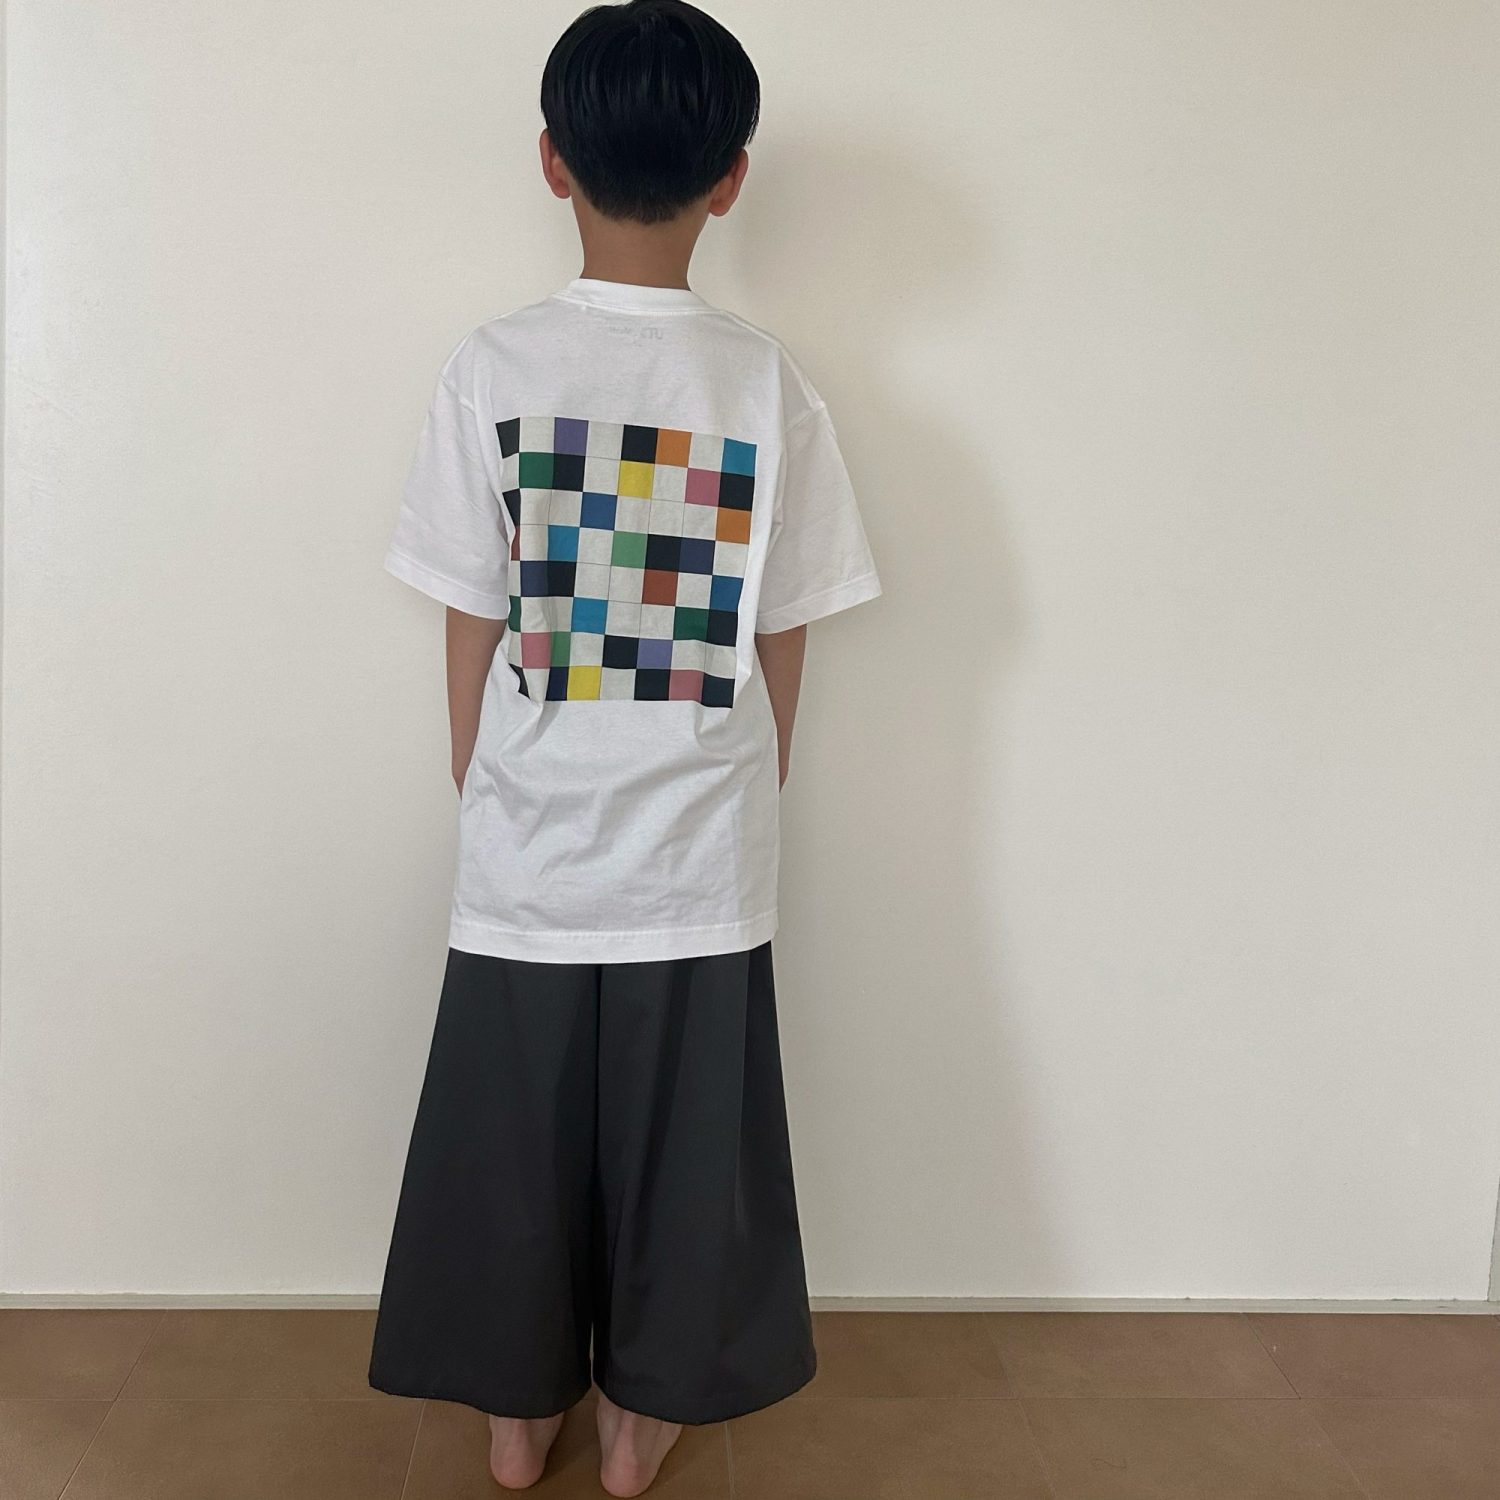 ユニクロの新作おすすめの購入品♡親子コーデができるMoMaコラボアートTシャツ。ユニクロでおしゃれキッズコーデ。